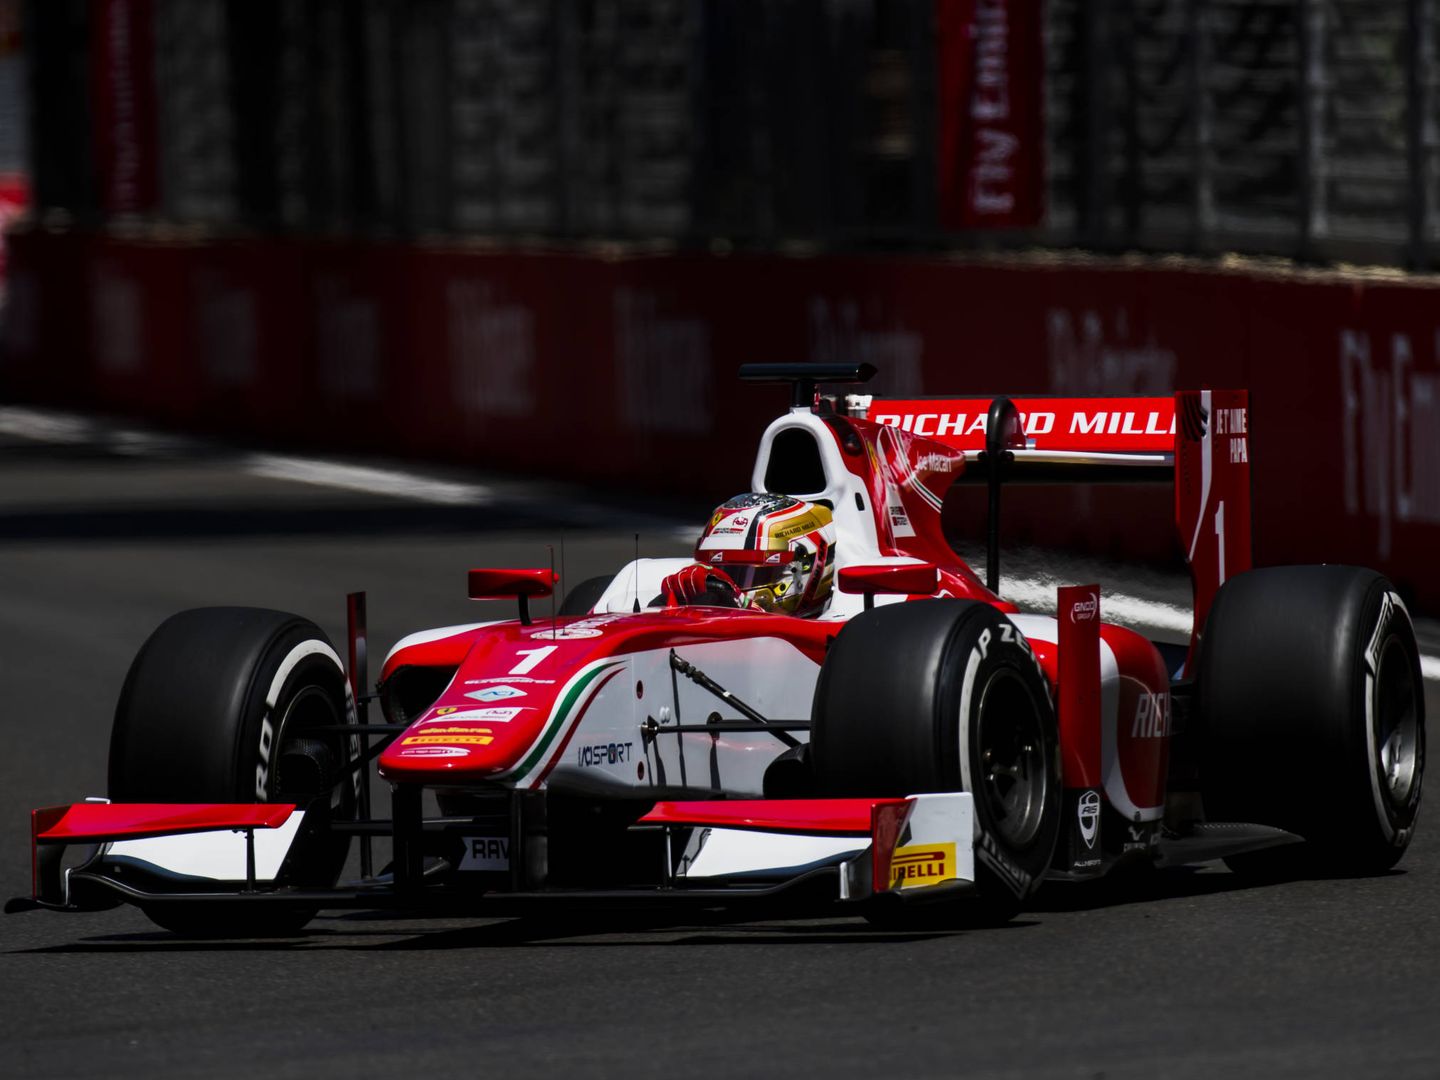 Leclerc, intratable en su año de debut en la Fórmula 2, podría proclamarse campeón en Jerez. (FIA F2)